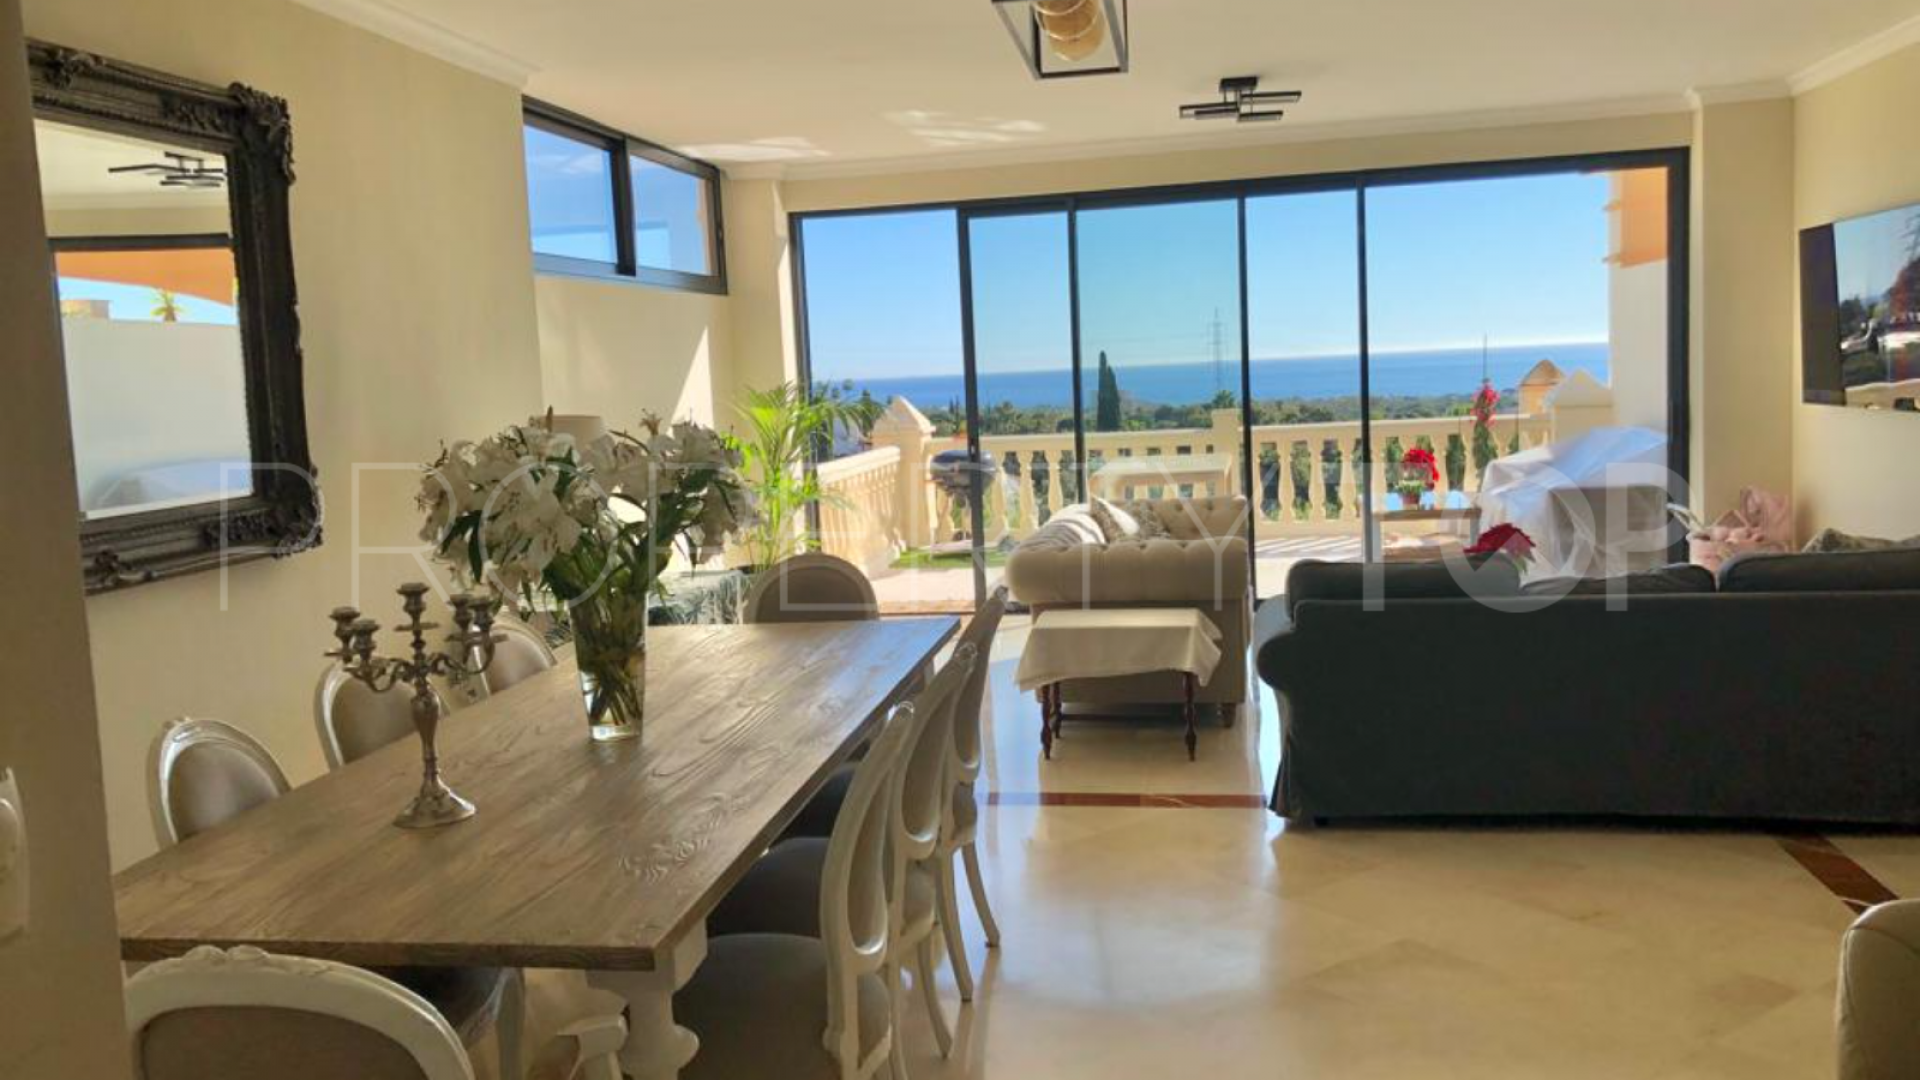 3 bedrooms villa in Marbella for sale